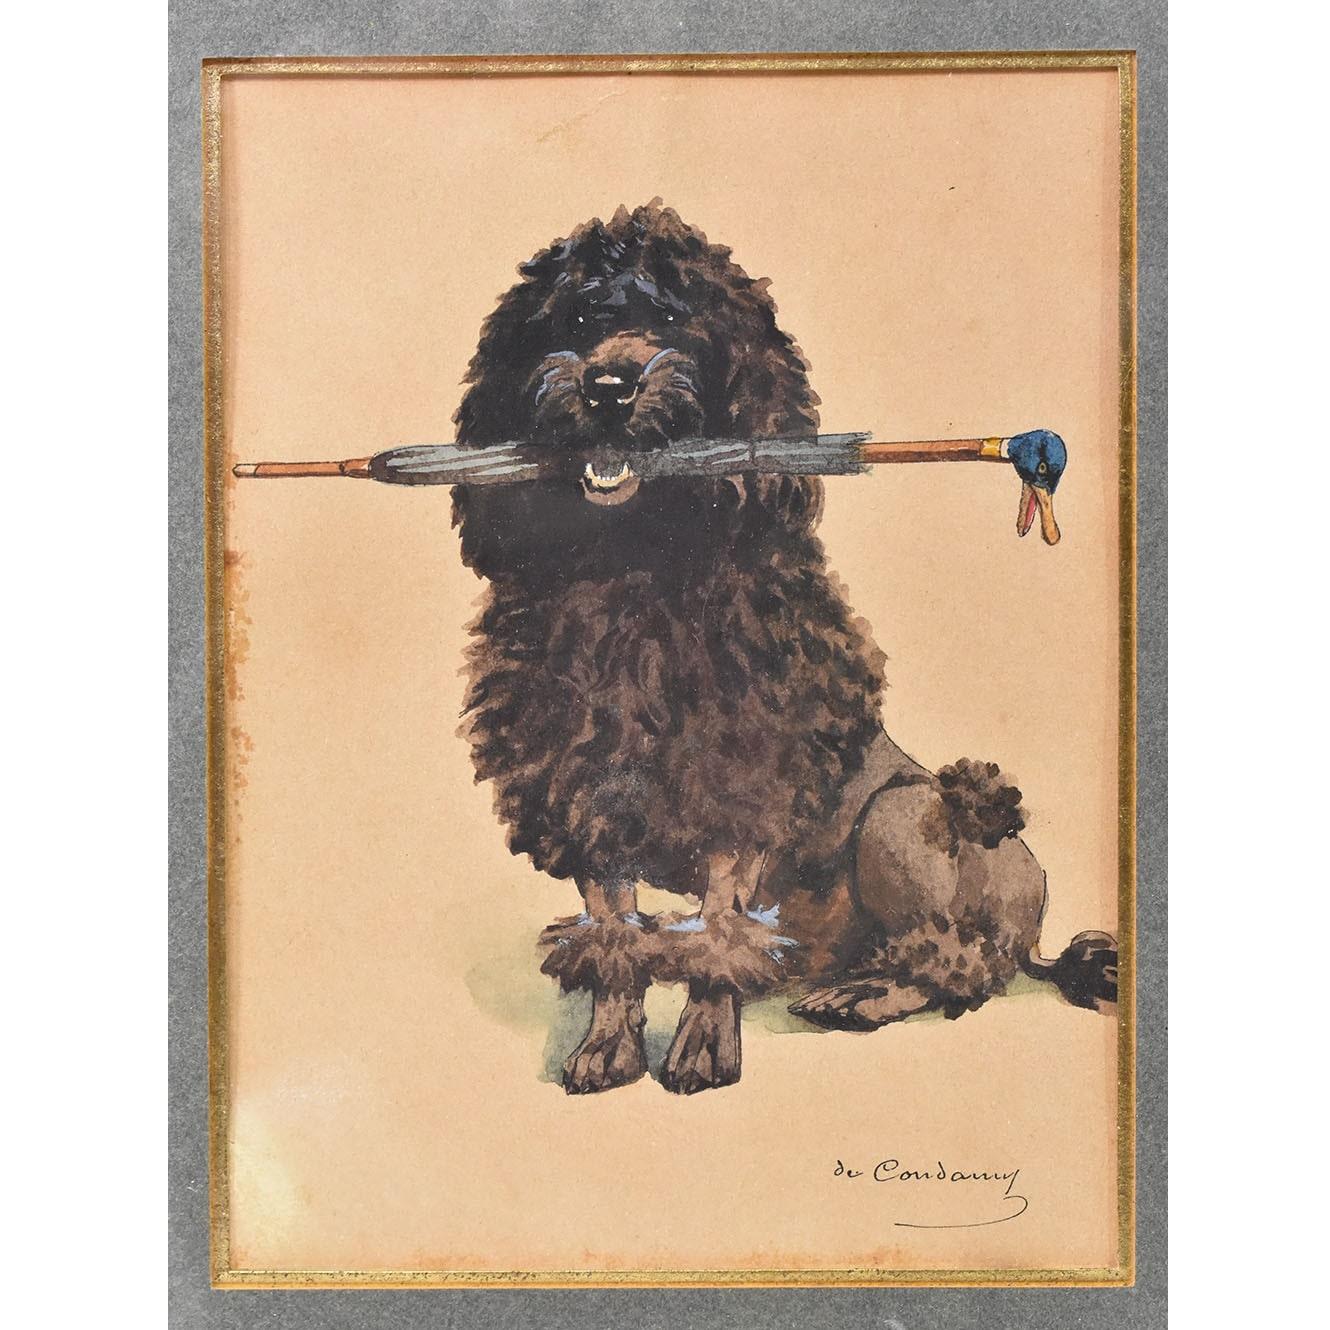 Die Kategorie Alte Hundeporträts enthält ein kleines Gemälde, ein Aquarell auf Papier mit
das Porträt eines schwarzen Pudelhundes, Ende des 19. Jahrhunderts.  

Dies ist ein schönes Porträt eines kleinen Hundes, eines schwarzhaarigen Pudels 
der